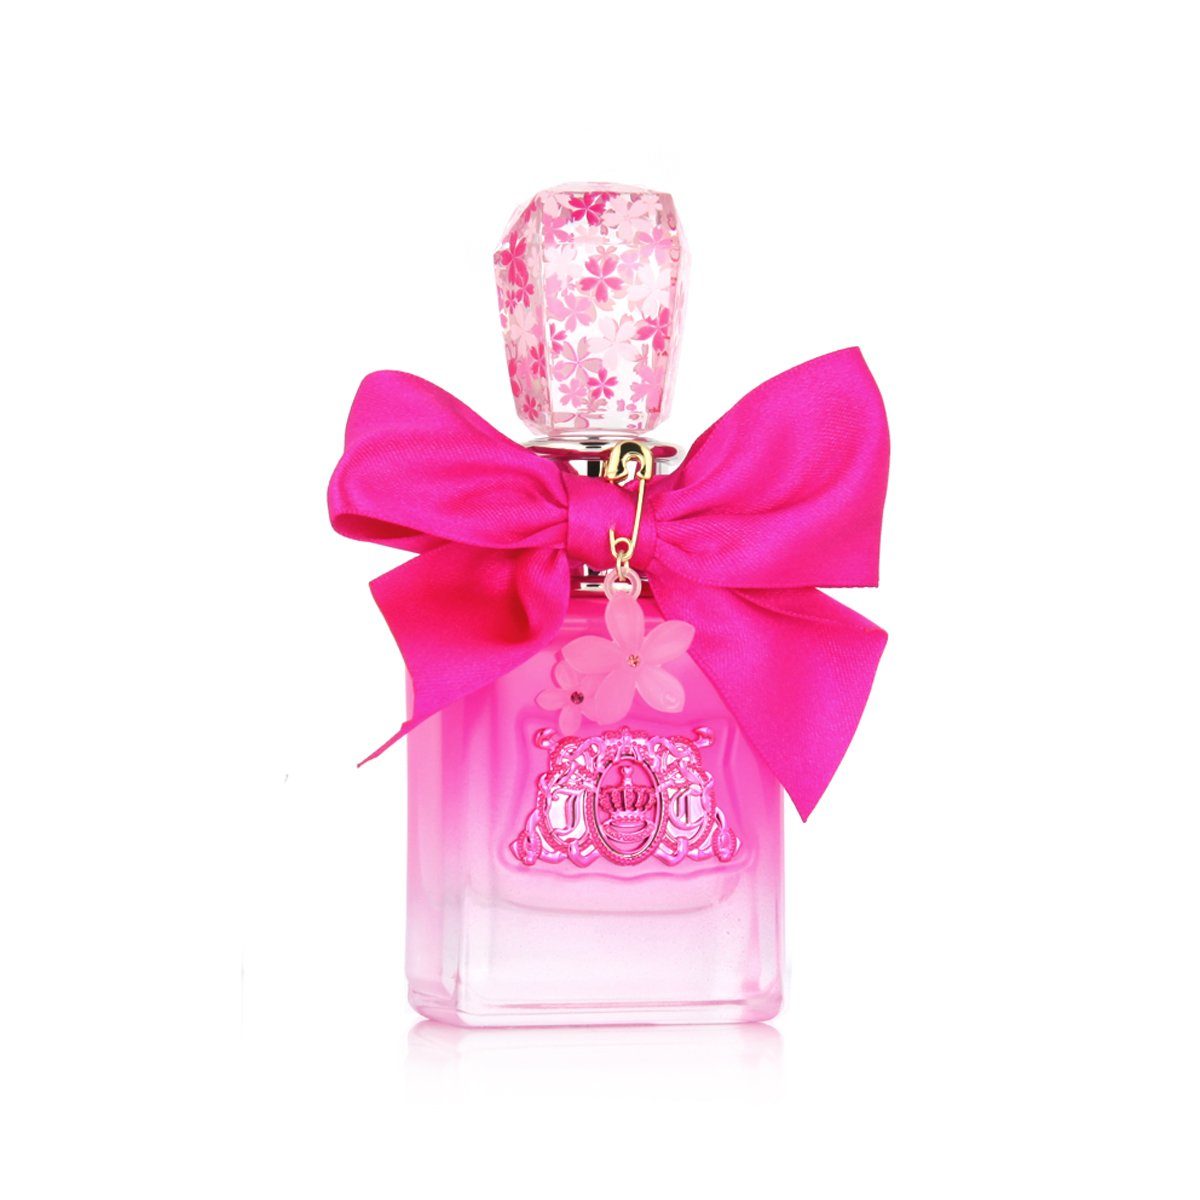 Juicy Couture Eau de Parfum Viva La Juicy Petals Please